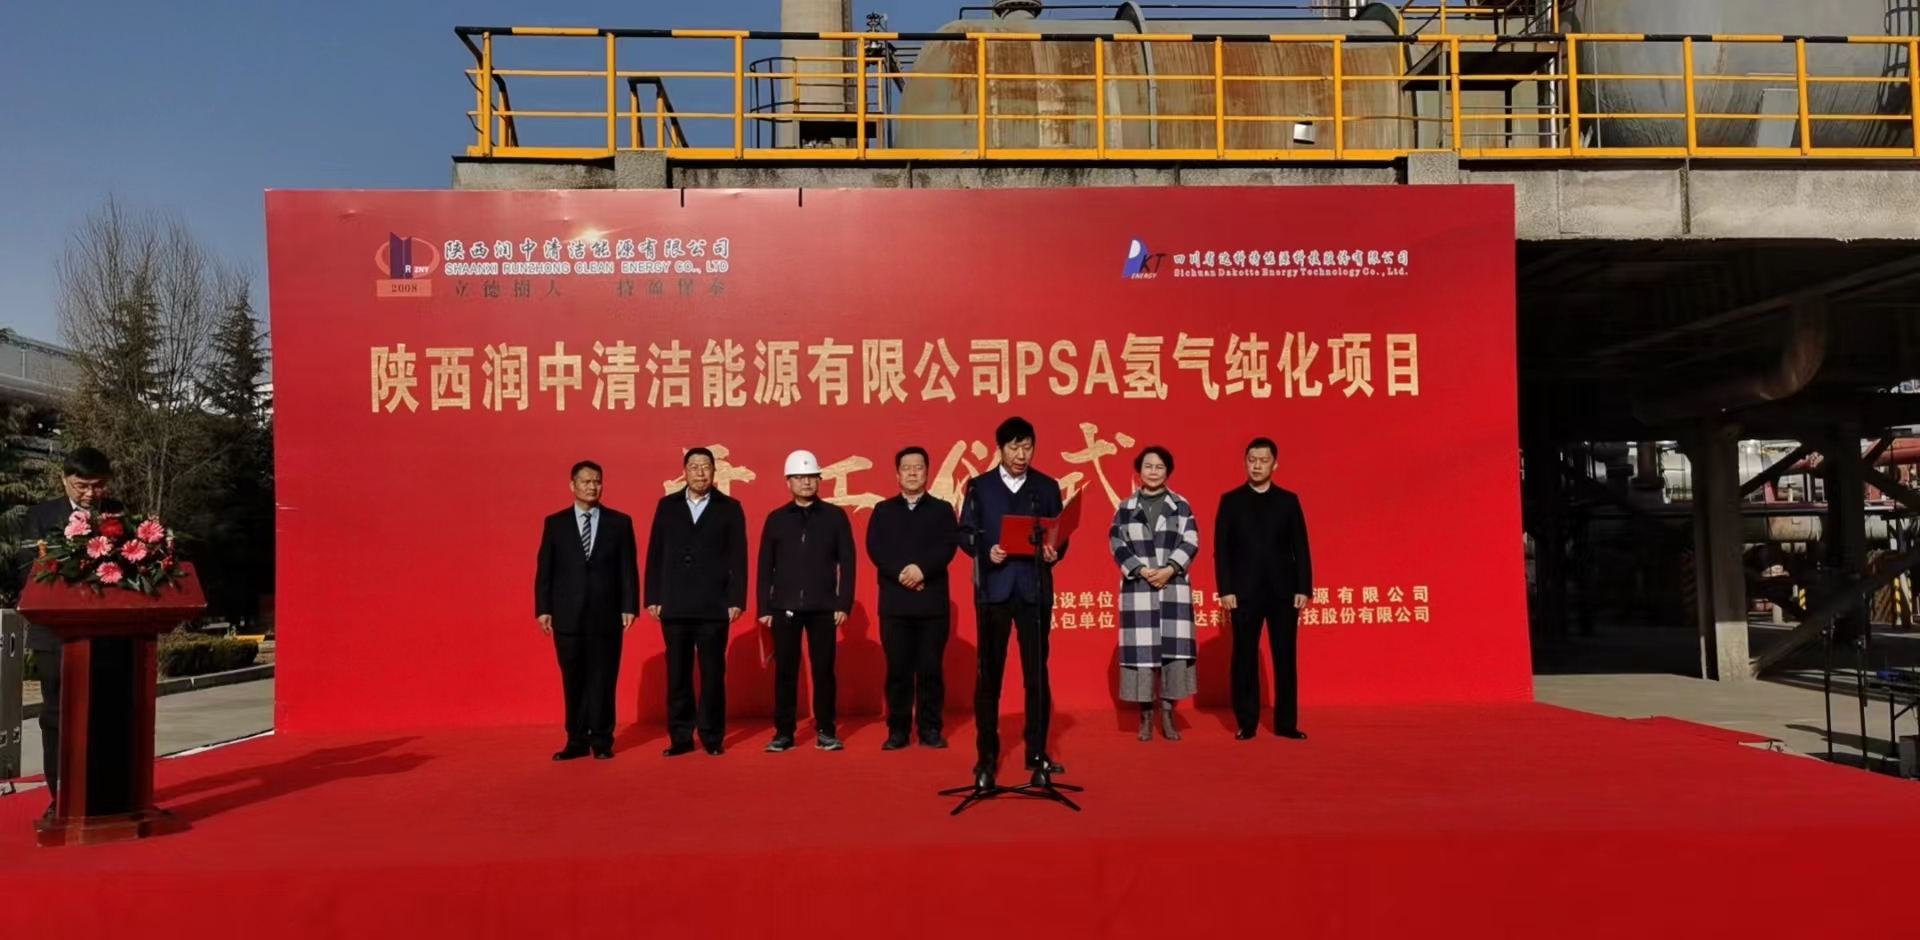 祝贺陕西润中—PSA氢气纯化EPC项目开工仪式圆满成功